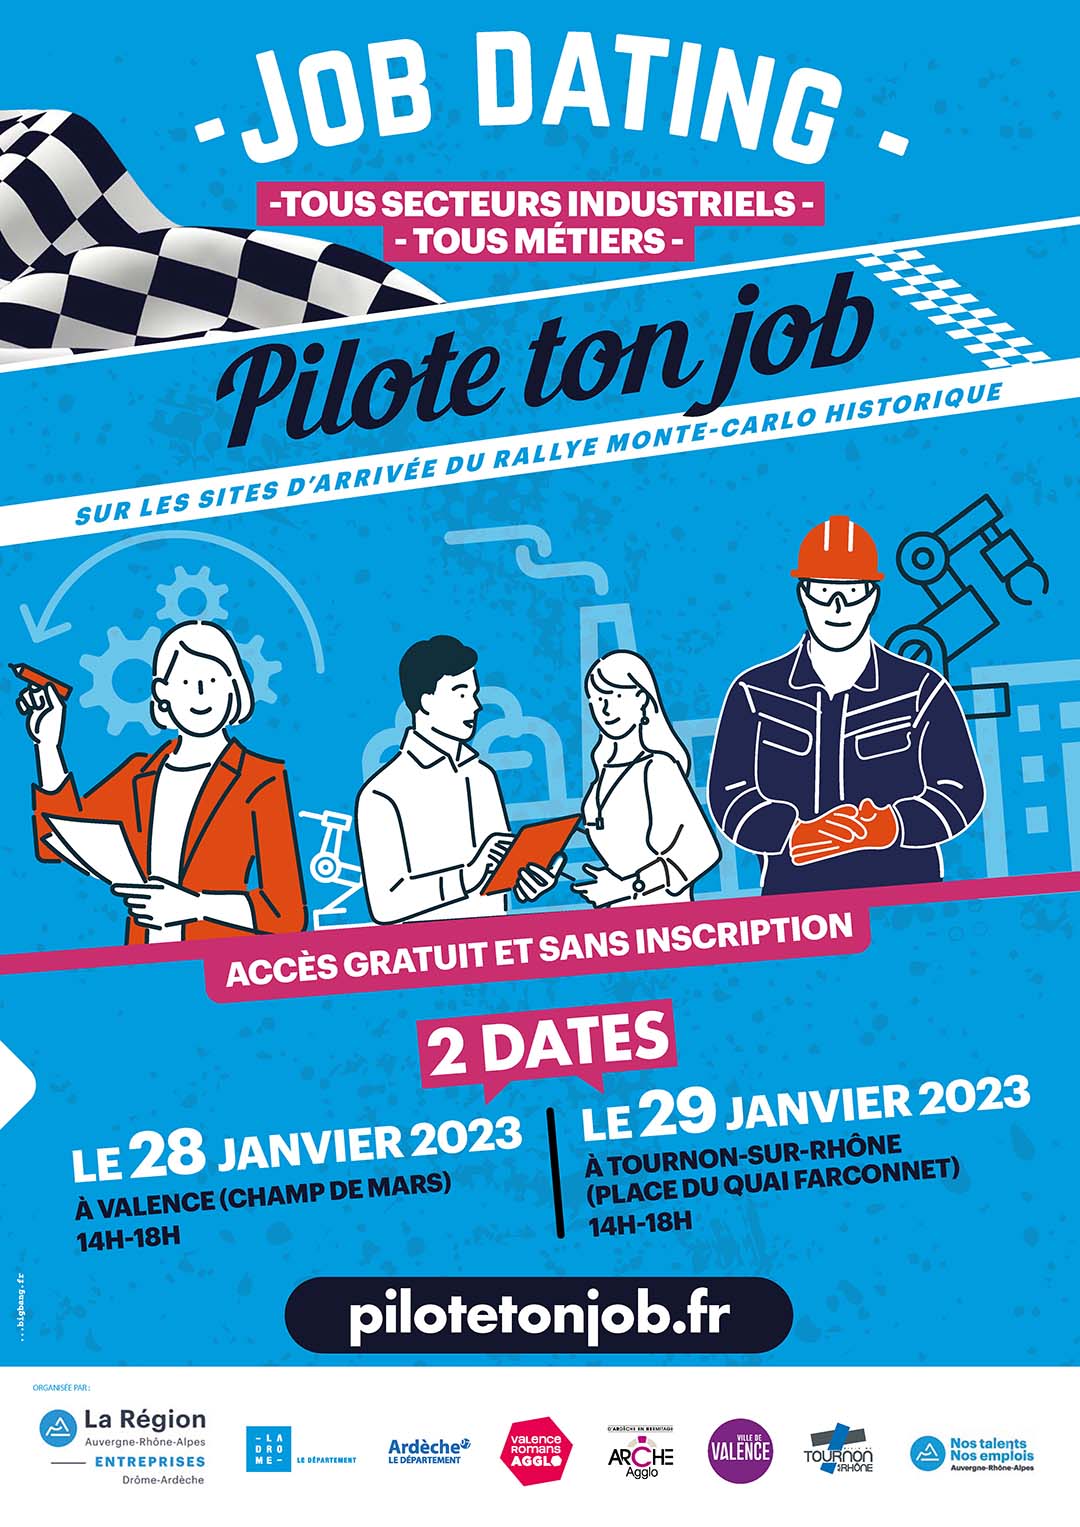 PILOTE TON JOB. Job dating tous secteurs industriels, tous métiers. 28 et 29 janvier 2023.